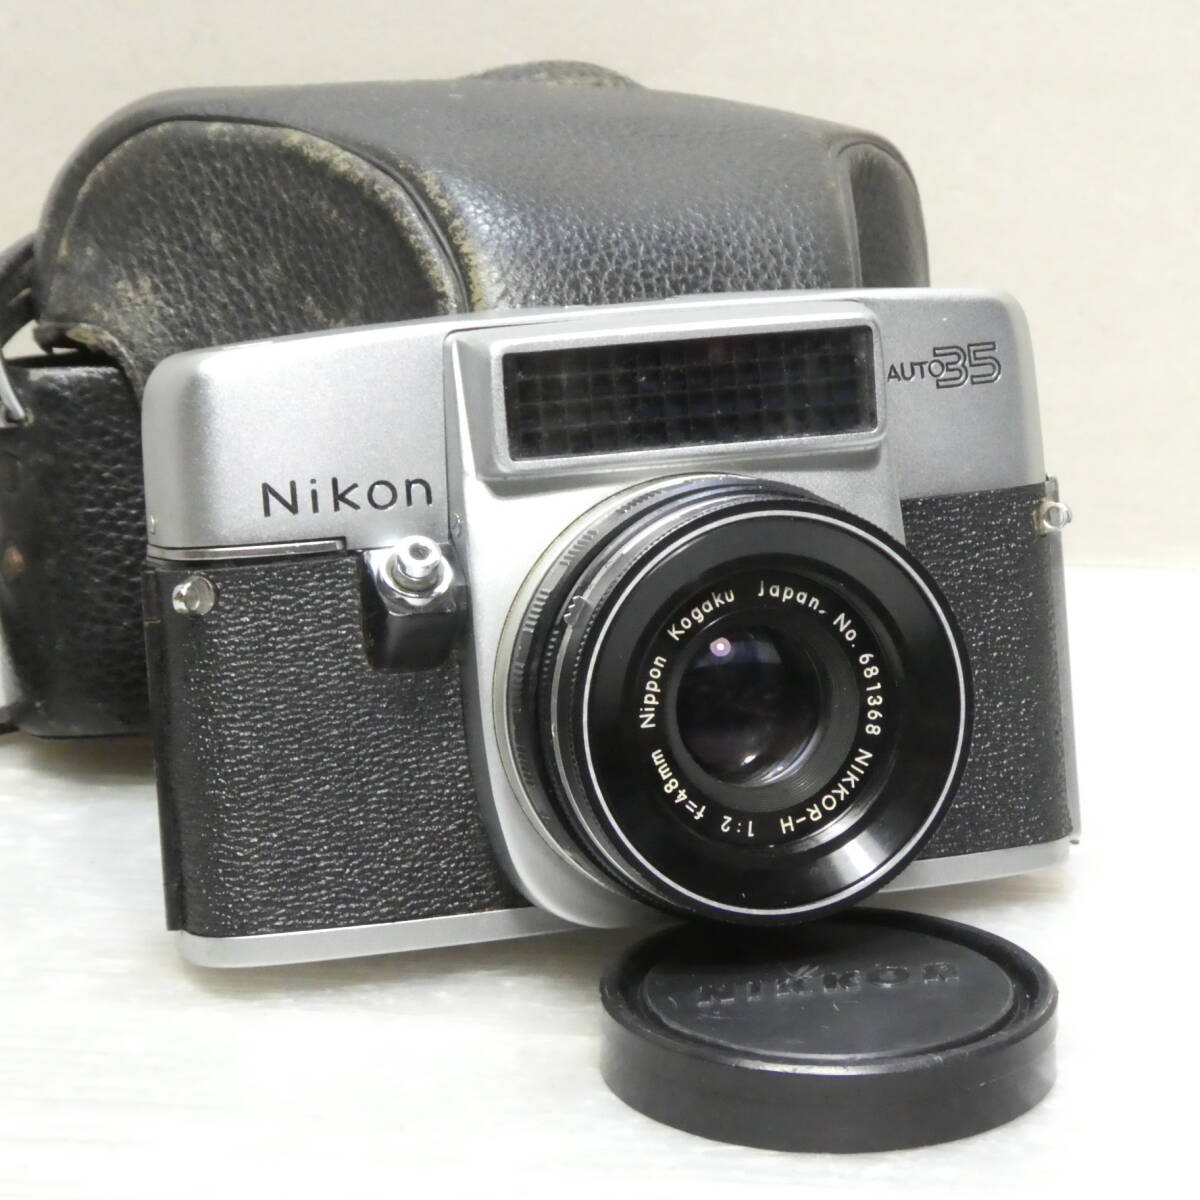 フイルム(コンパクト)カメラ(589)  Nikon Auto35 NIKKOR-H 2/48 NIPPON KOGAKU TOKYO ジャンクセットの画像1